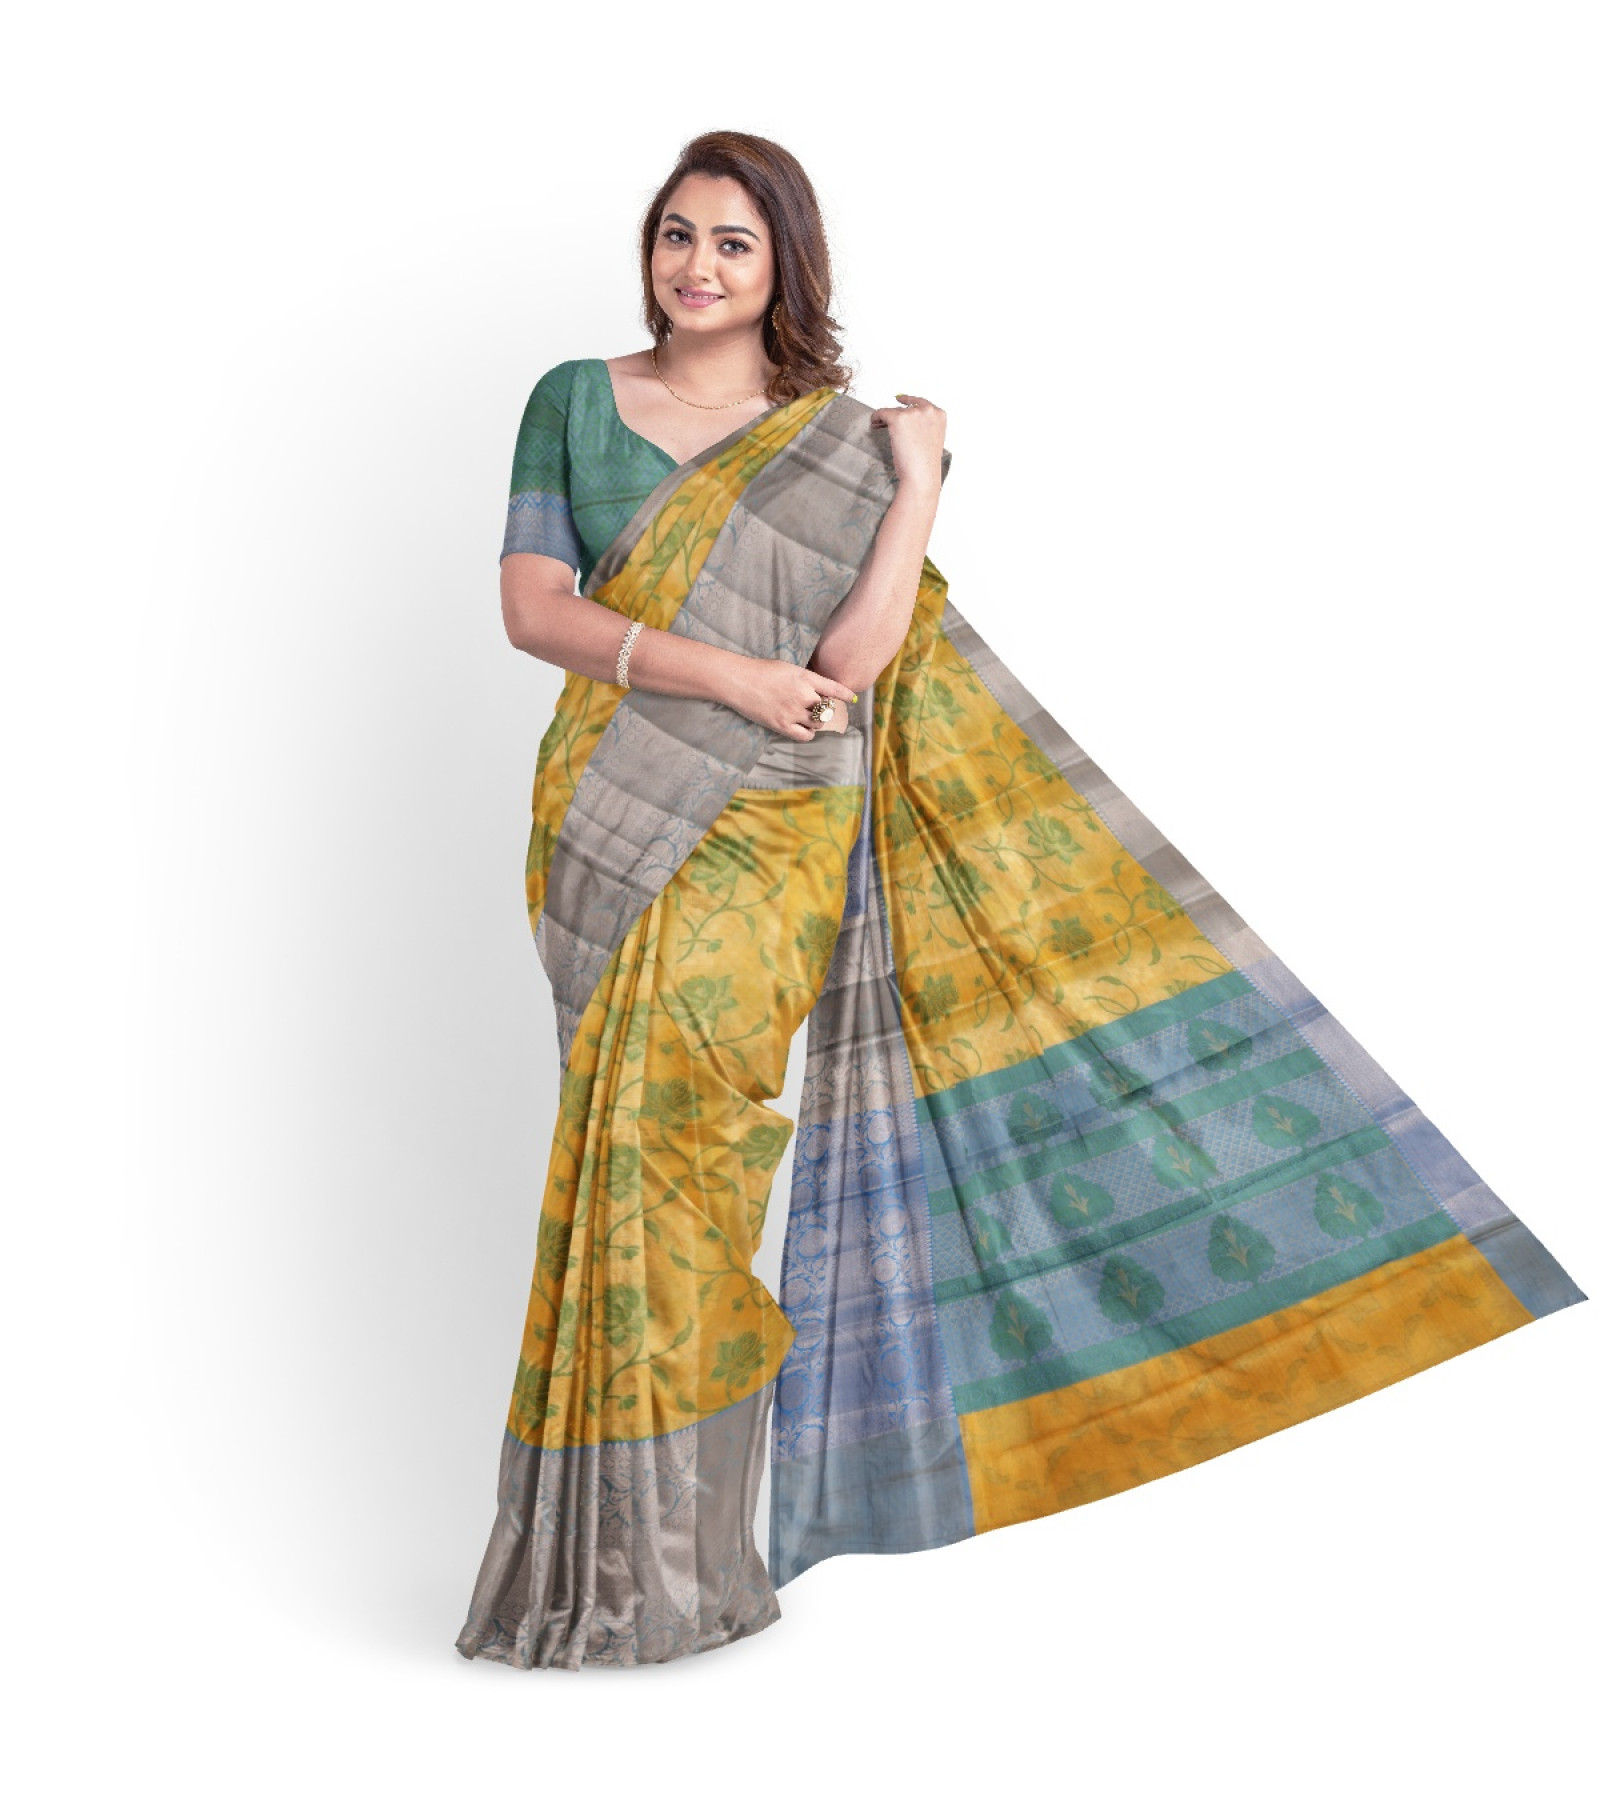 Exclusive Khaki Tissue Vanya Bengal Saree by Abaranji 